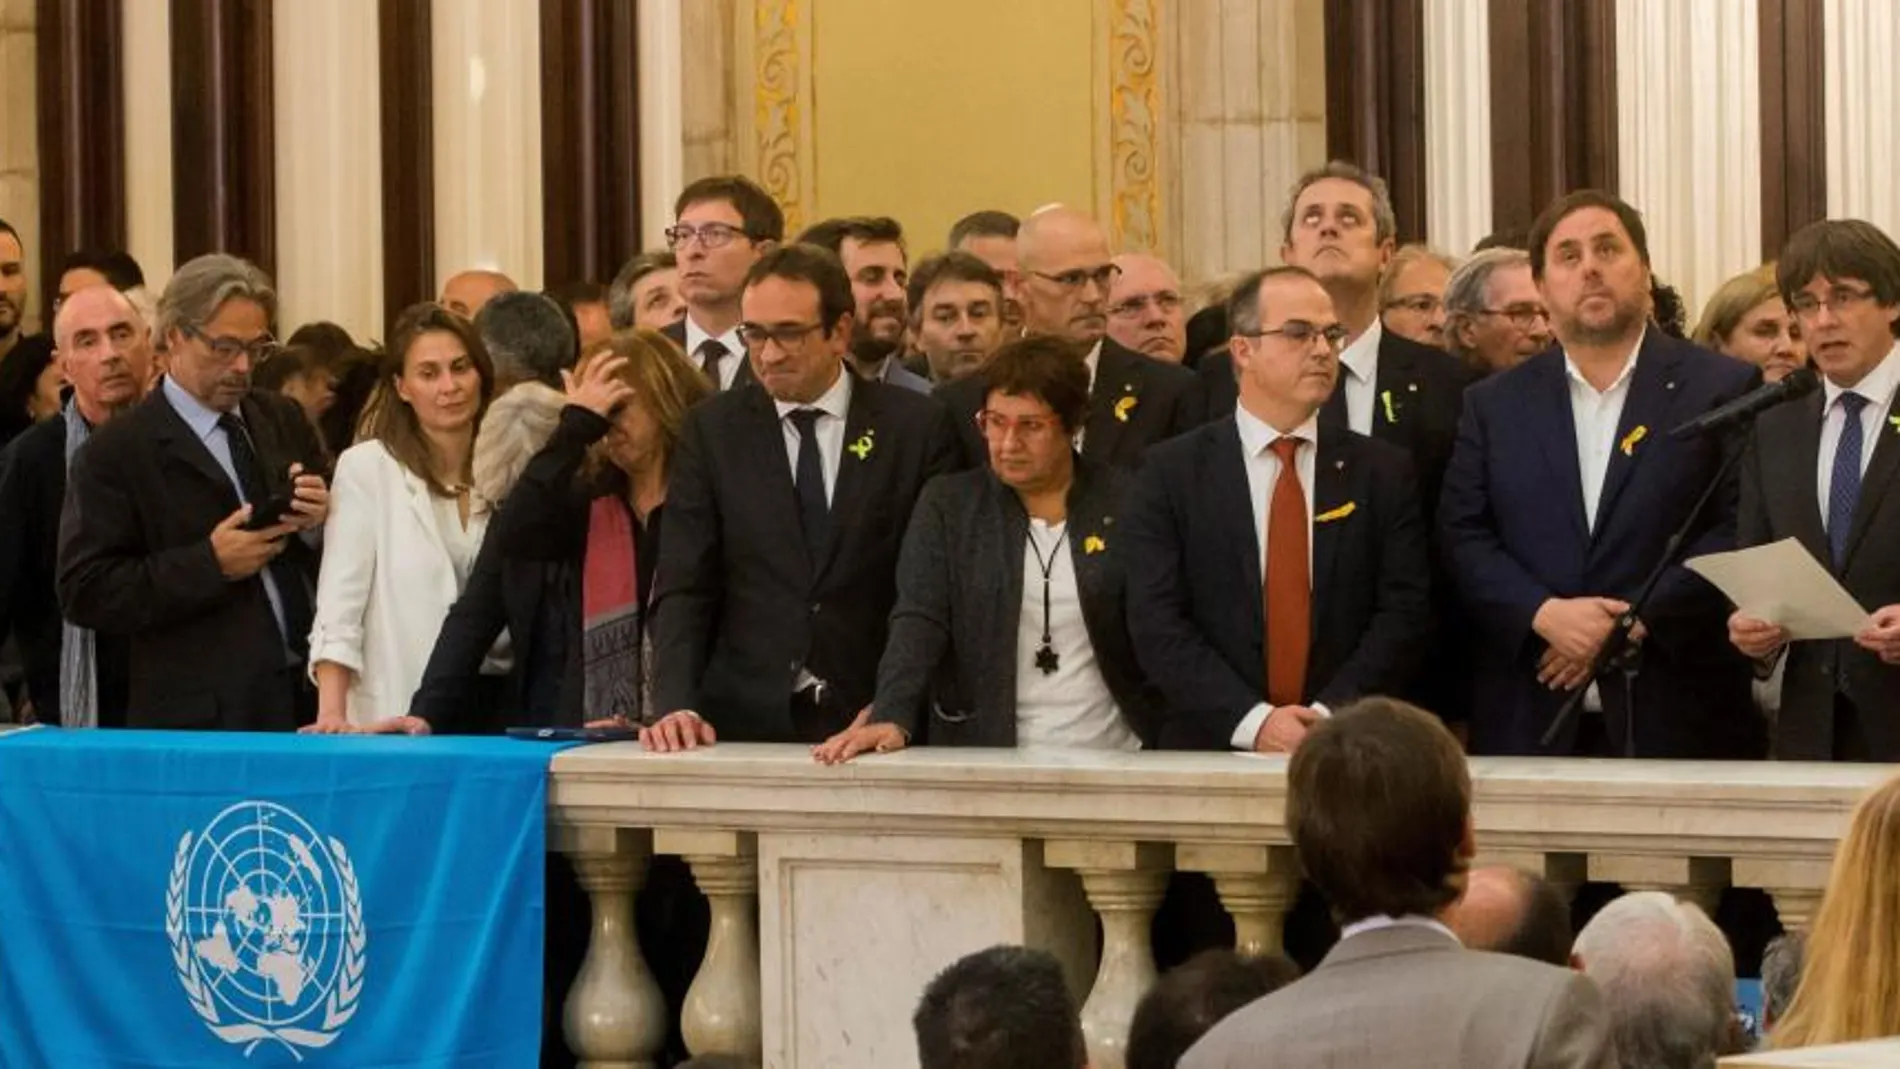 El Govern de la Generalitat tras la declaración de independencia del 27 de octubre. REUTERS/Yves Herman